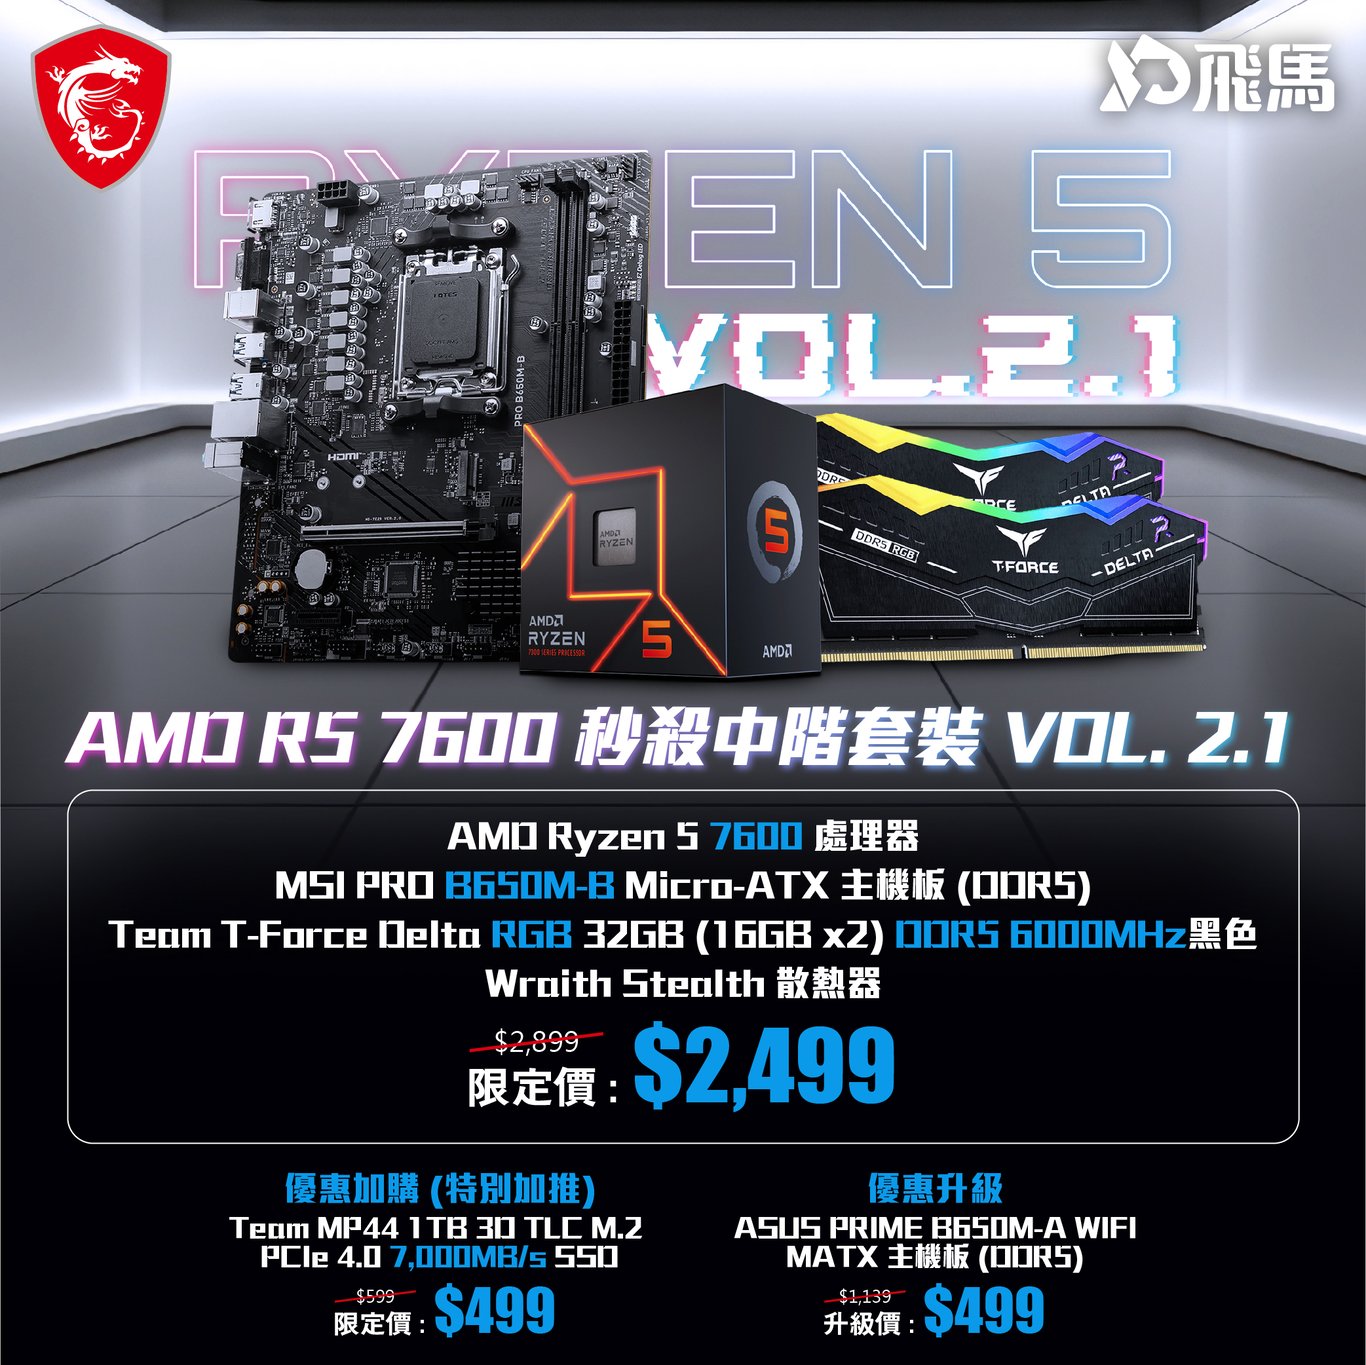 MSI AMD R5 7600  VOL.2.1